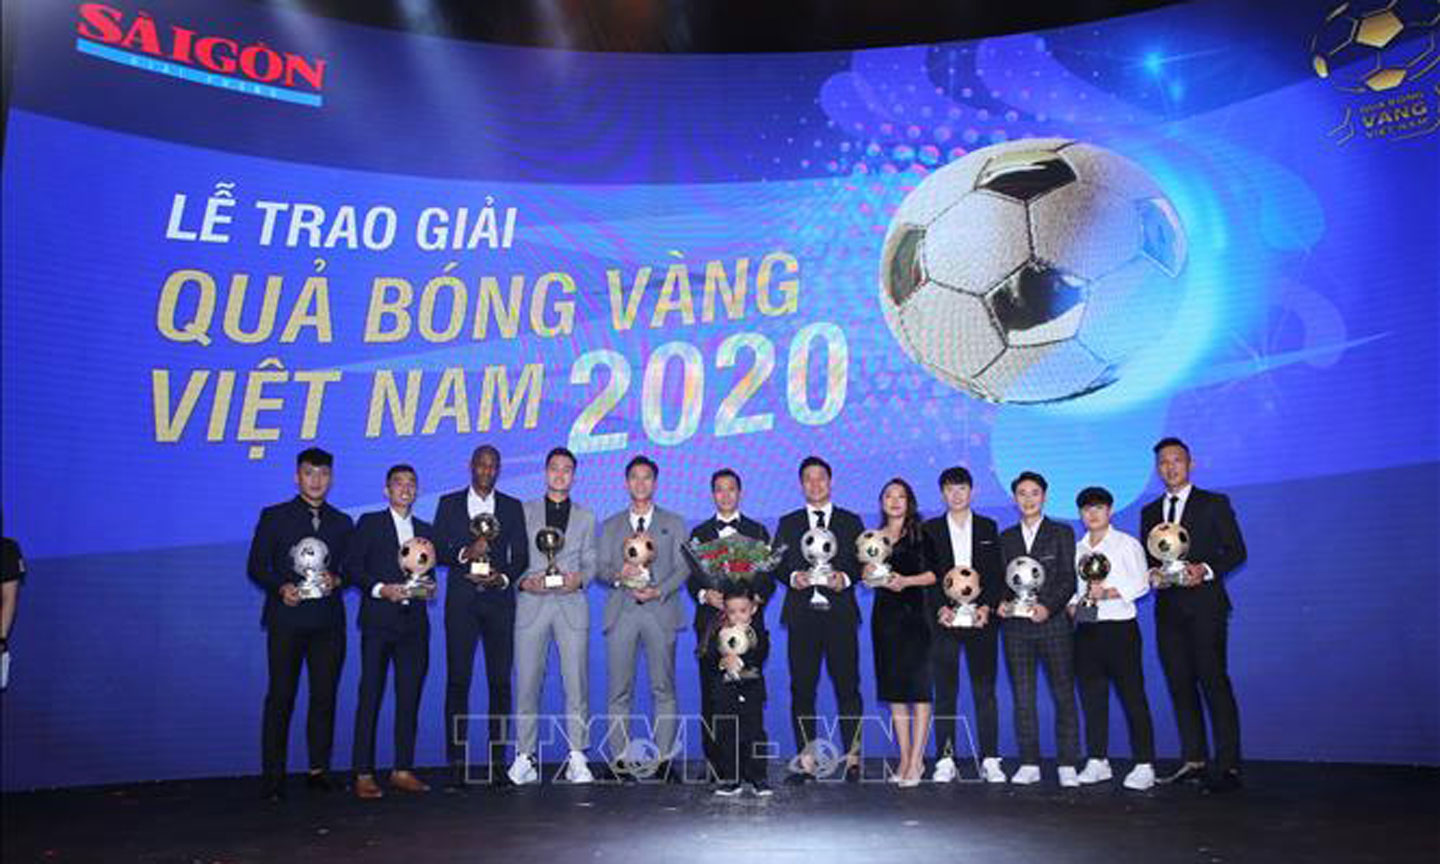 Các cầu thủ đoạt giải được vinh danh tại lễ trao giải Quả bóng vàng Việt Nam 2020. Thanh Vũ/TTXVN